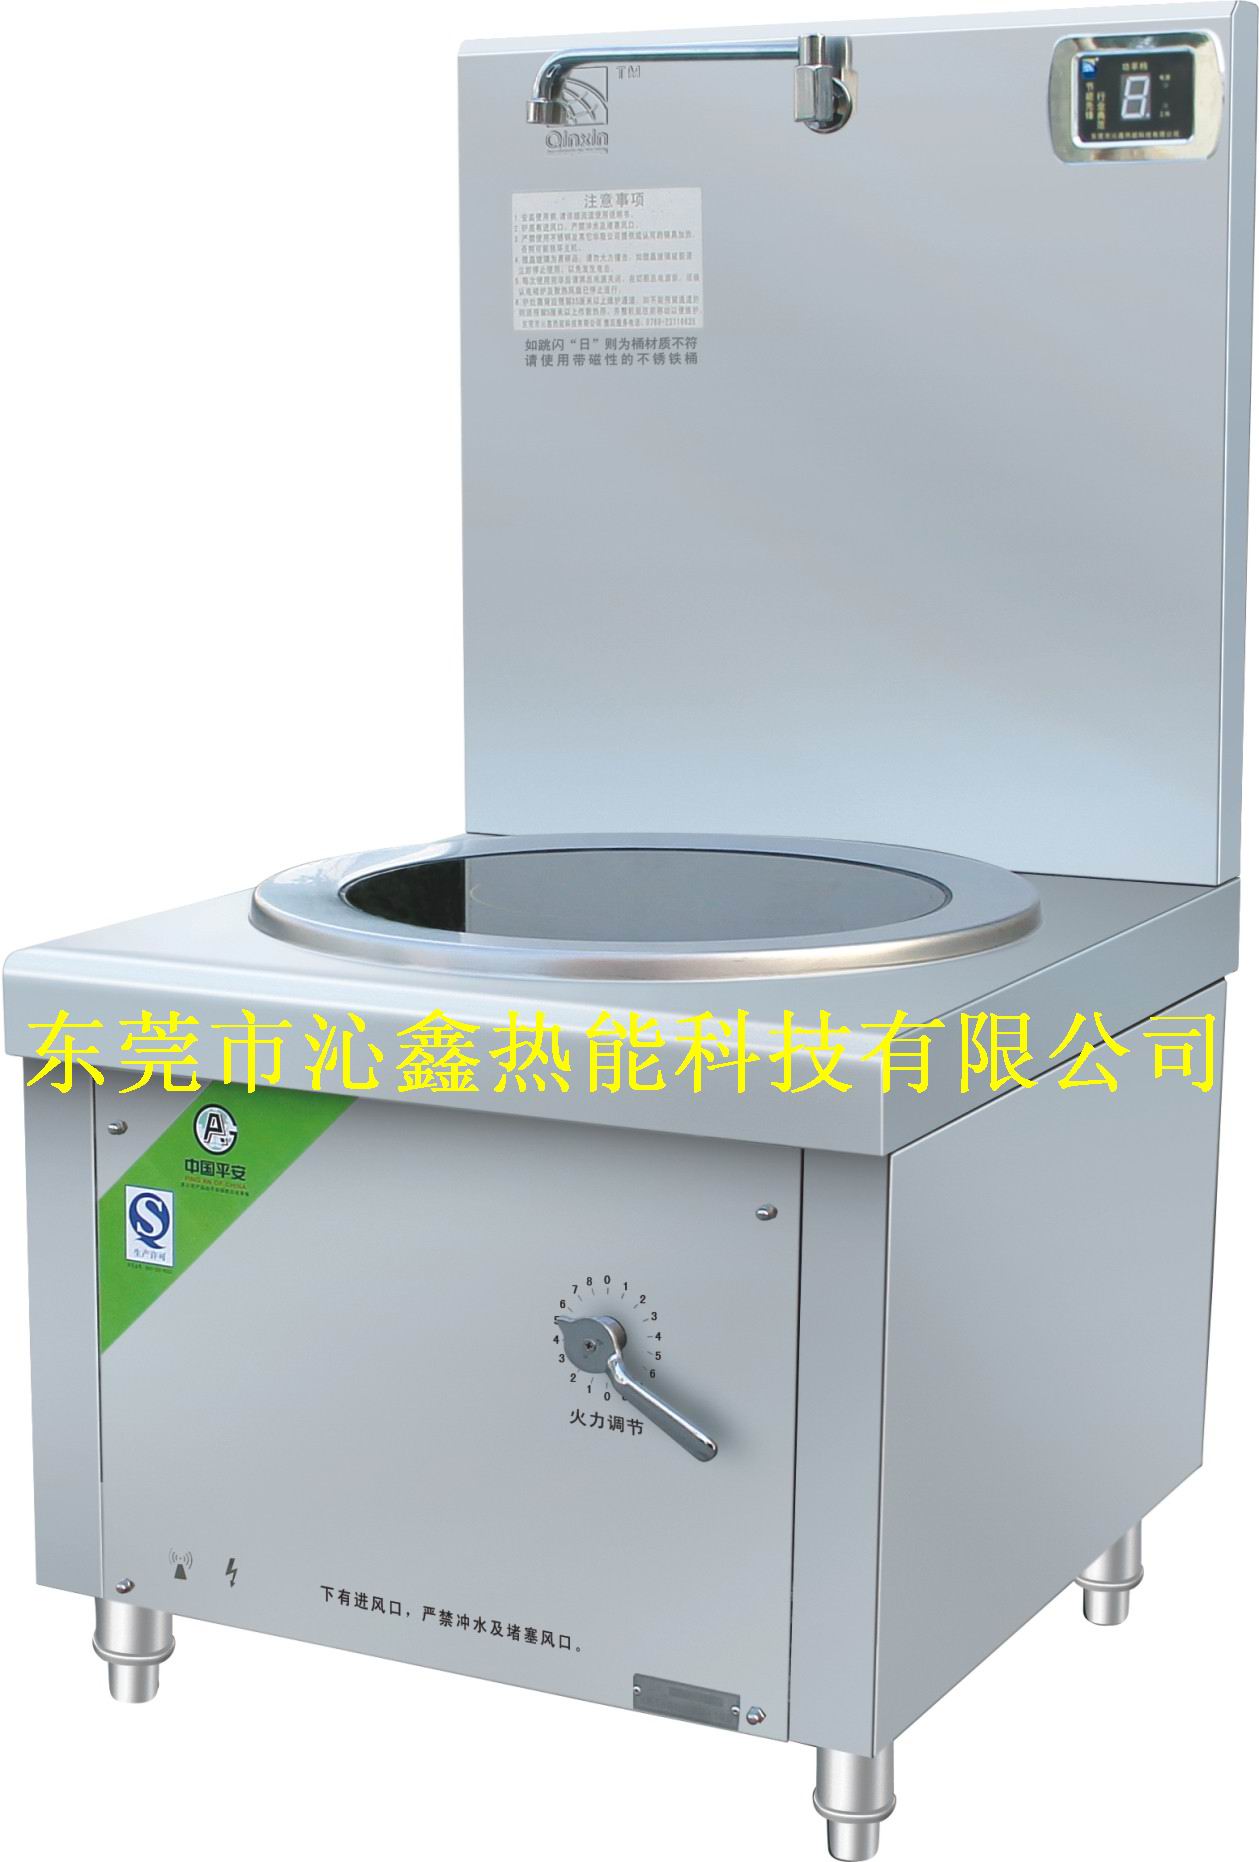 广东电磁炉厂家 选择沁鑫 大功率电磁炉价格优惠